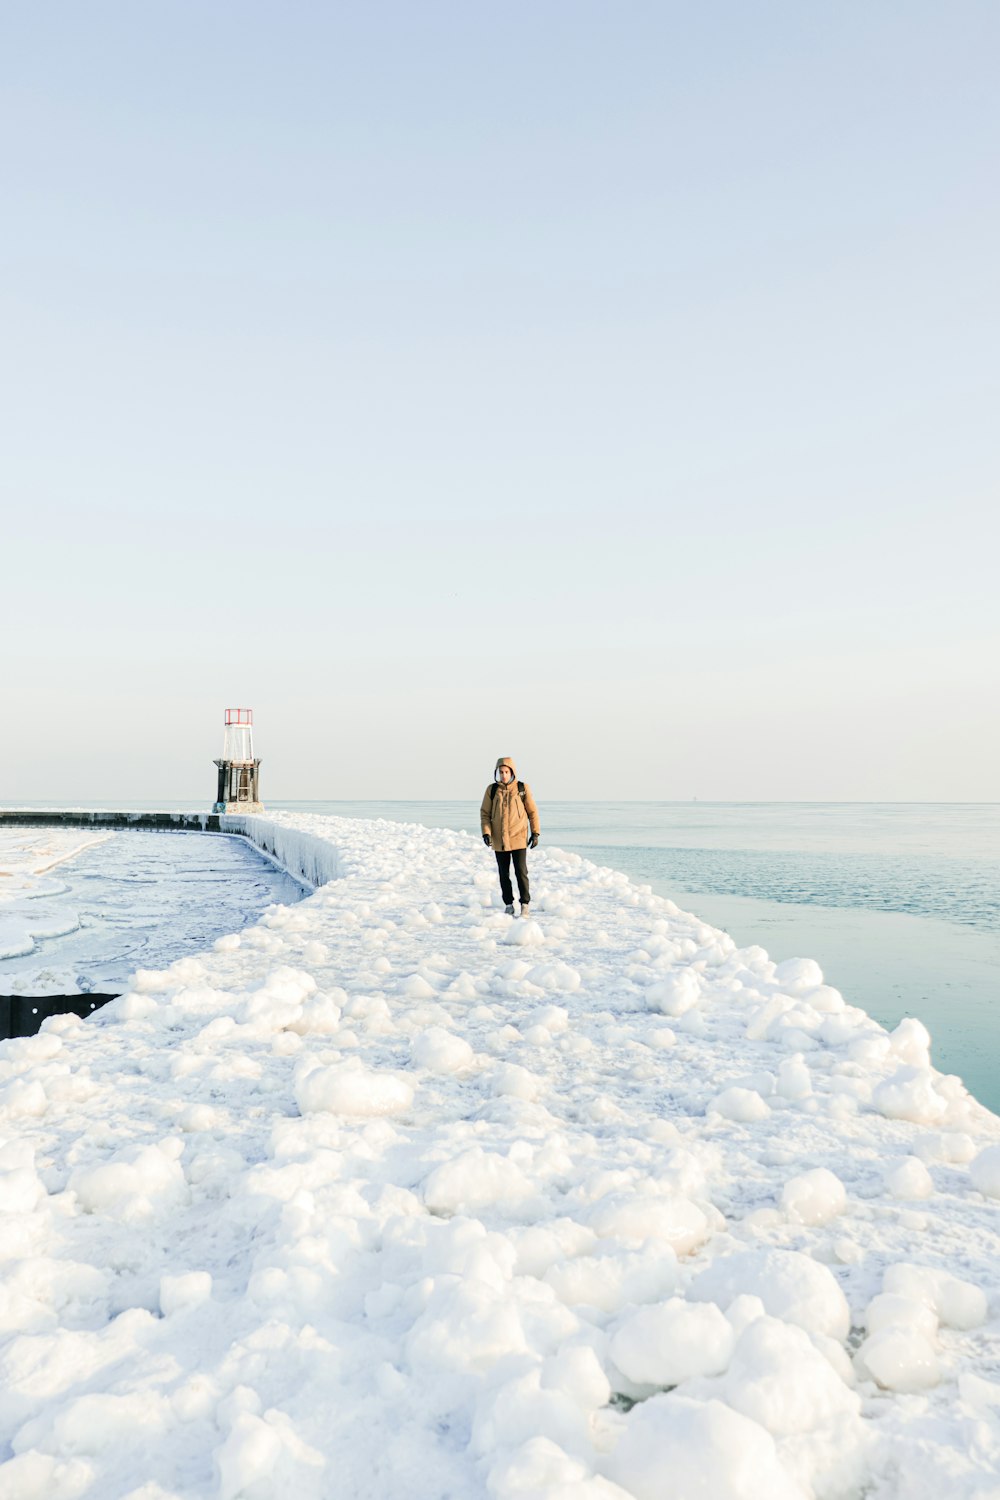 une personne debout sur une jetée recouverte de neige